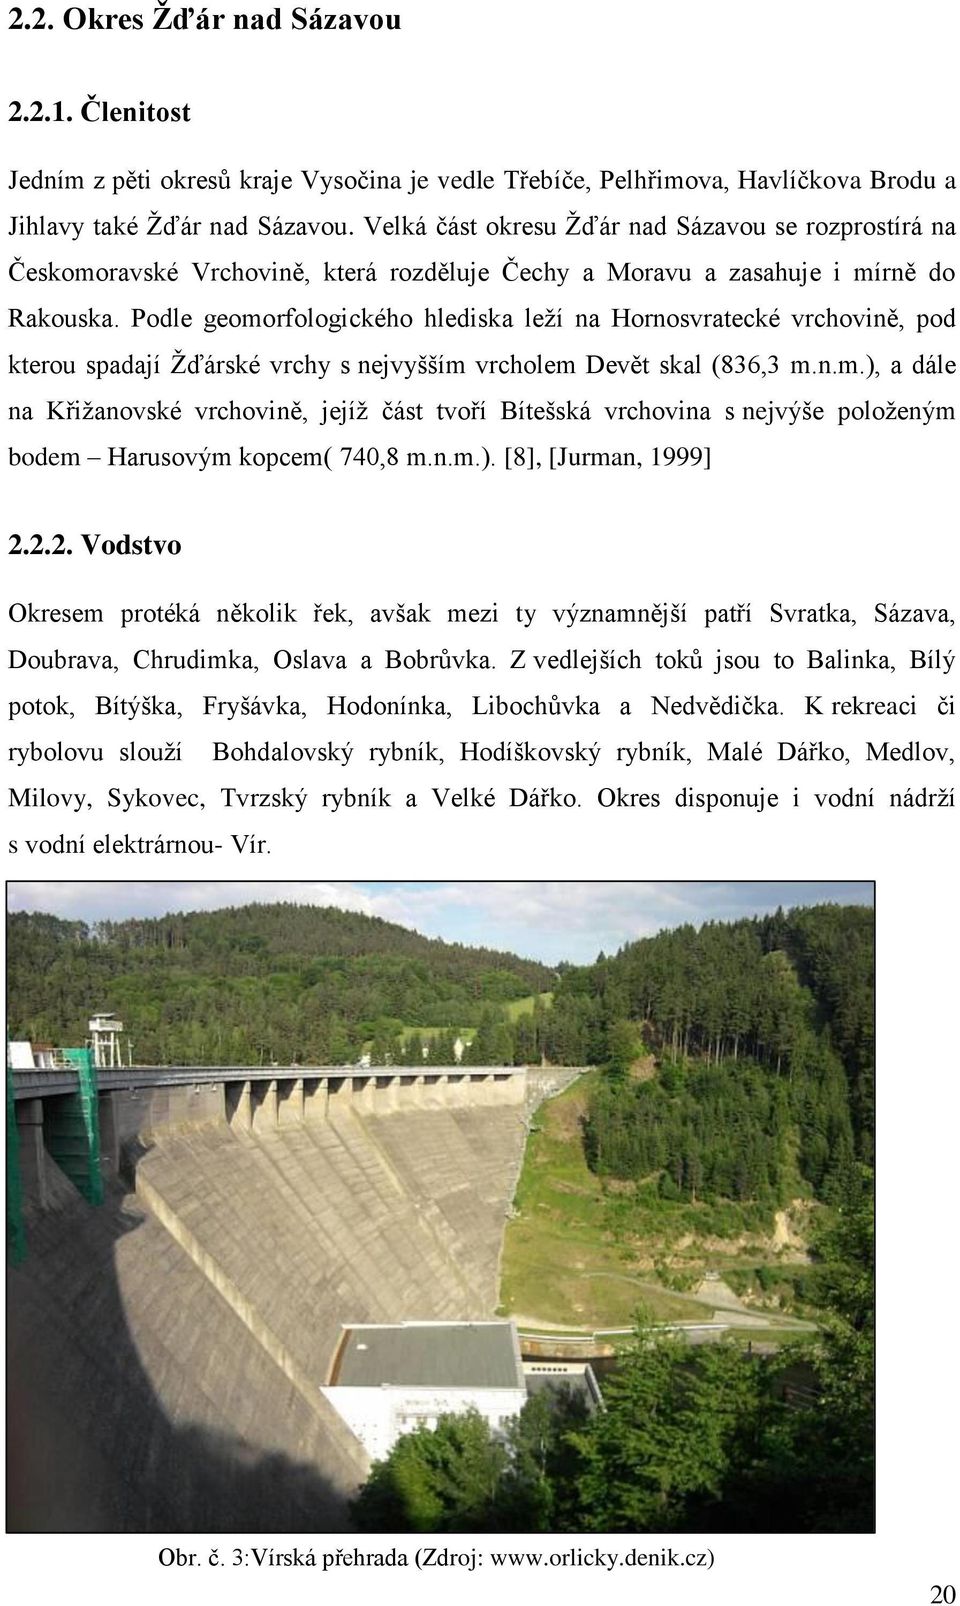 Podle geomorfologického hlediska leţí na Hornosvratecké vrchovině, pod kterou spadají Ţďárské vrchy s nejvyšším vrcholem Devět skal (836,3 m.n.m.), a dále na Křiţanovské vrchovině, jejíţ část tvoří Bítešská vrchovina s nejvýše poloţeným bodem Harusovým kopcem( 740,8 m.